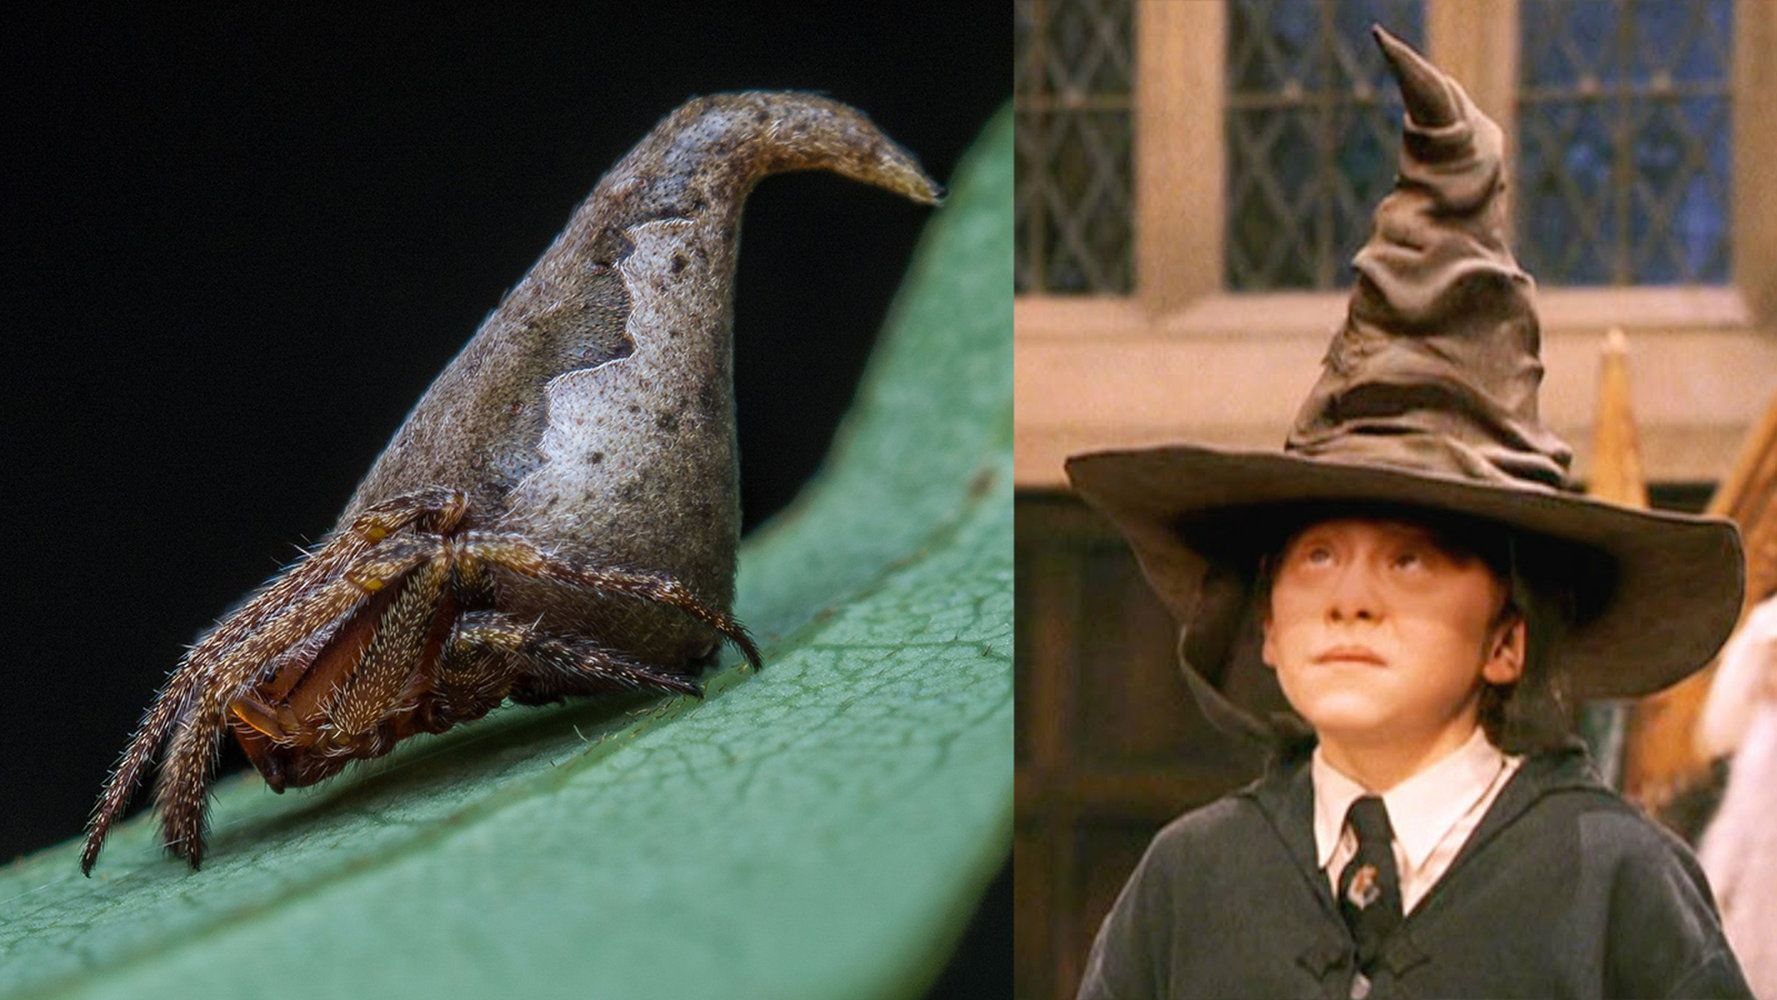 Animali: ecco il ragno simile al Cappello Parlante di Harry Potter [GALLERY]